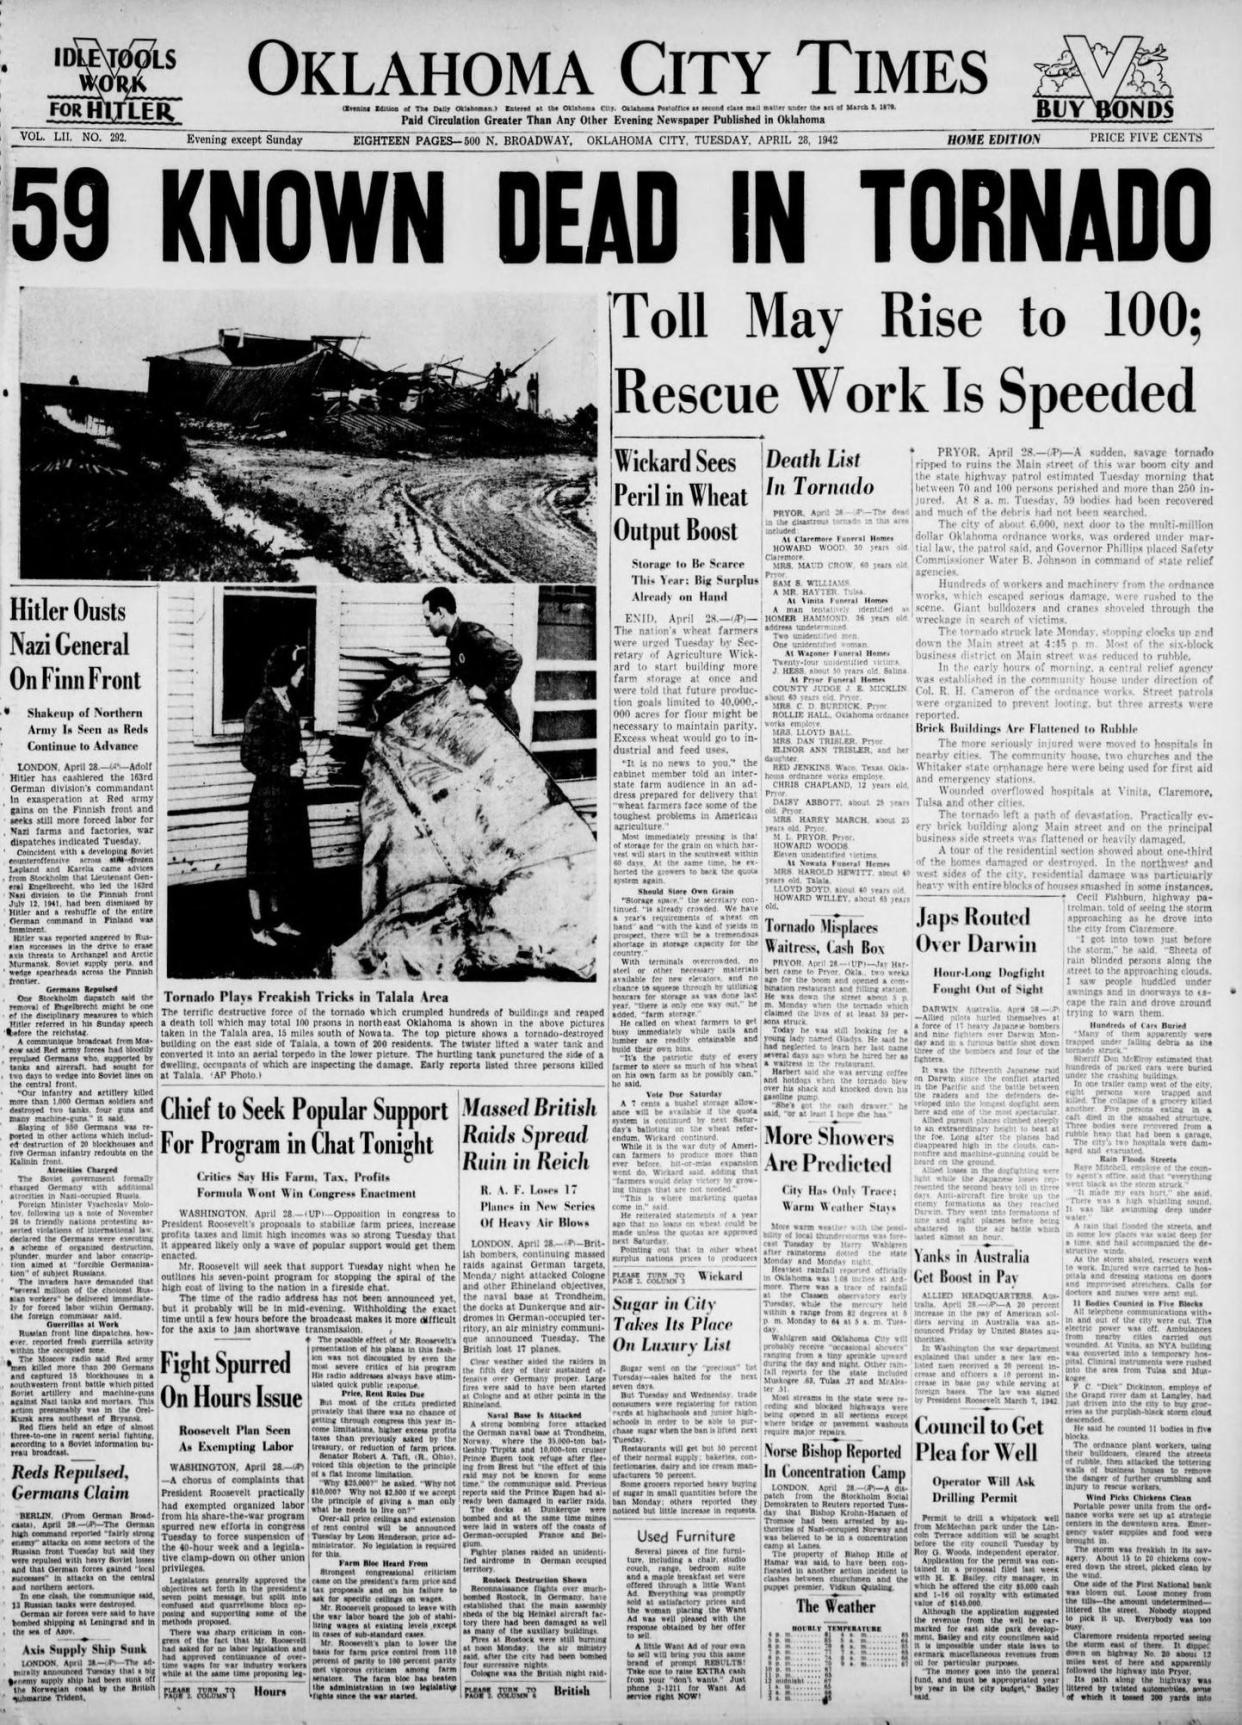 April 28, 1942 - Oklahoma City Times - Page 1 - Pryor tornado coverage